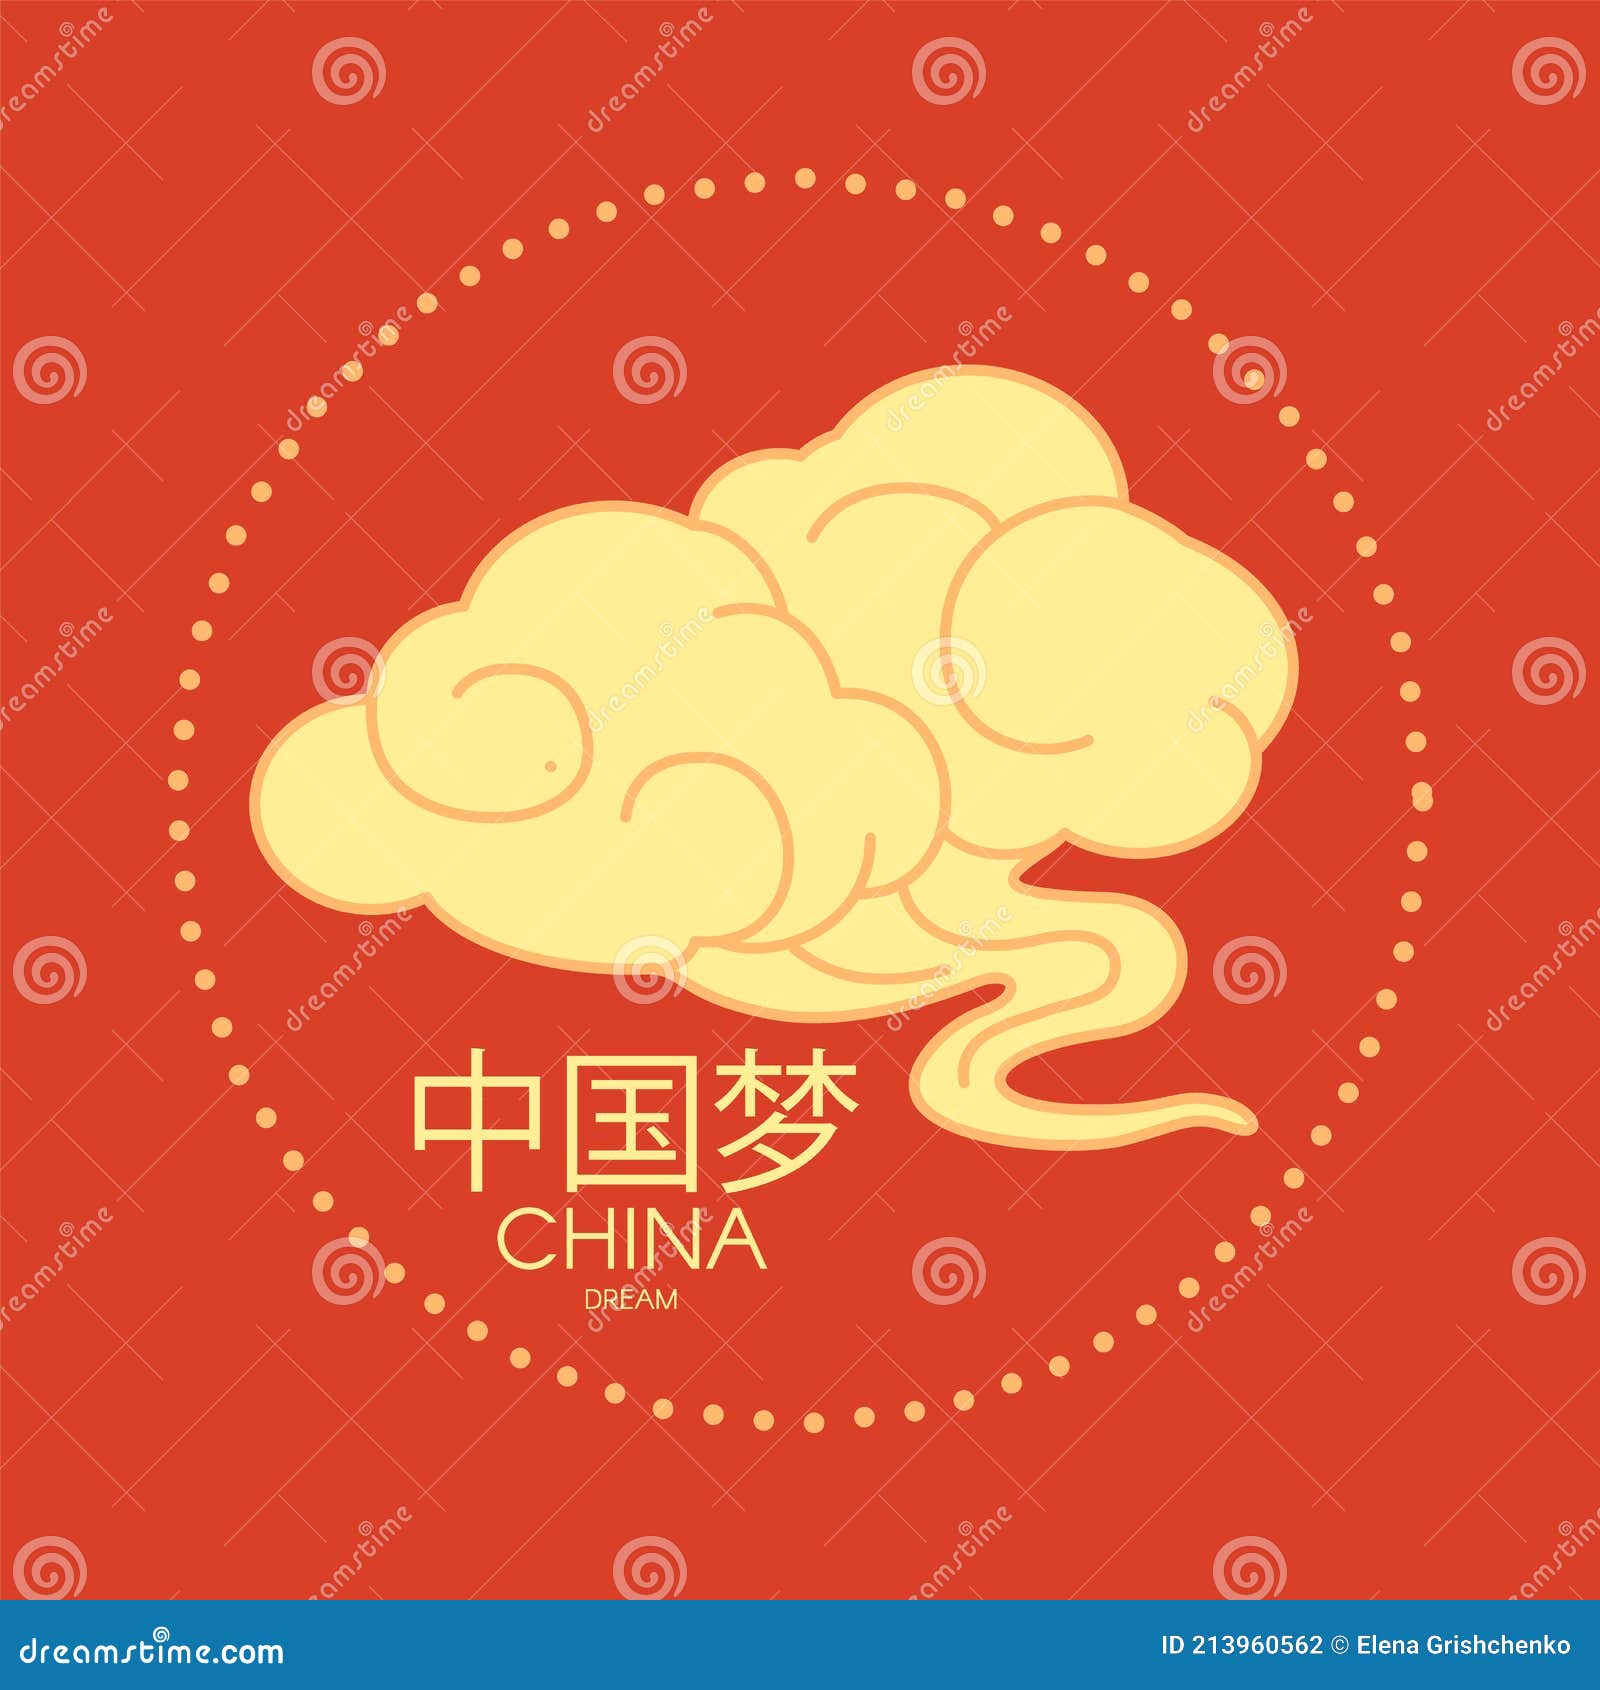 Nuvem em estilo chinês resumo isolado na ilustração vetorial de fundo  branco